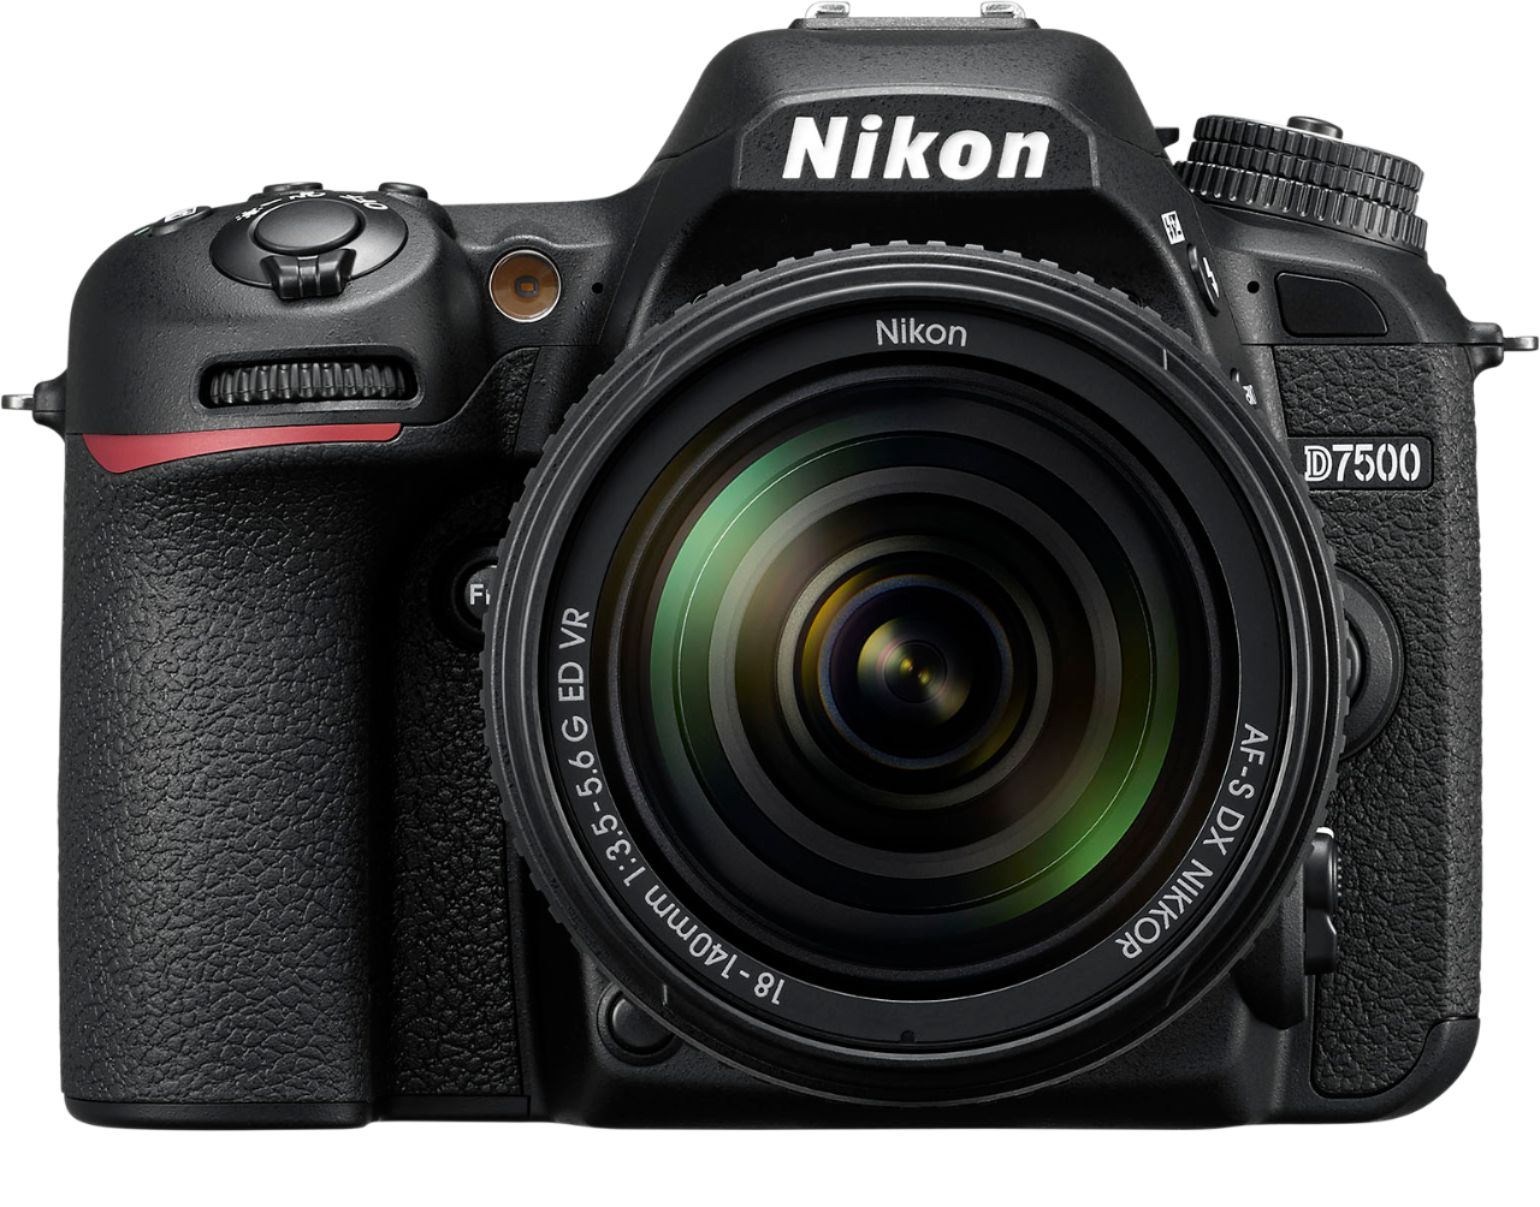 D7500 DSLR 4K Video with NIKKOR 18-140mm f/3.5-5.6G ED VR lens Black 1582 - Best Buy